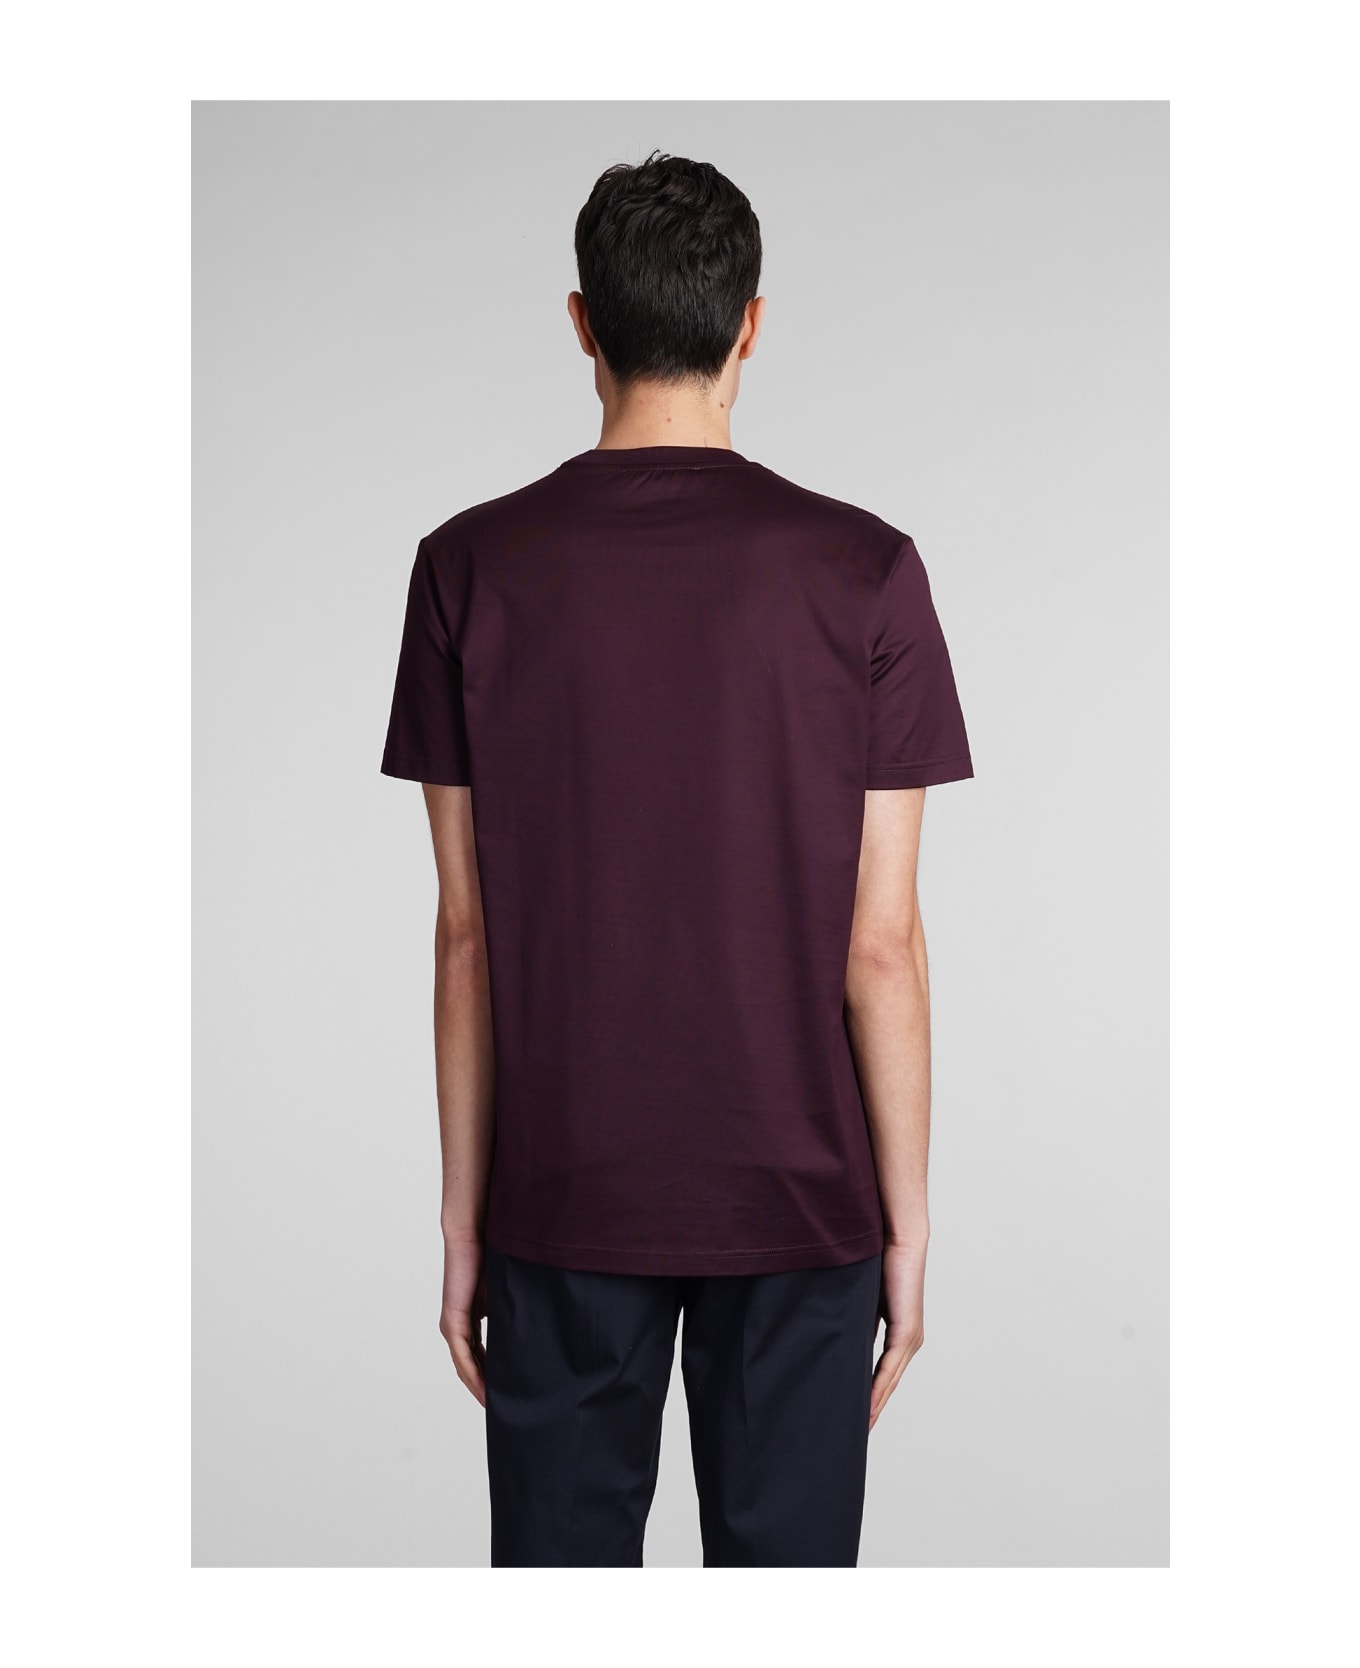 Low Brand B134 Basic T-shirt In Bordeaux Cotton - bordeaux